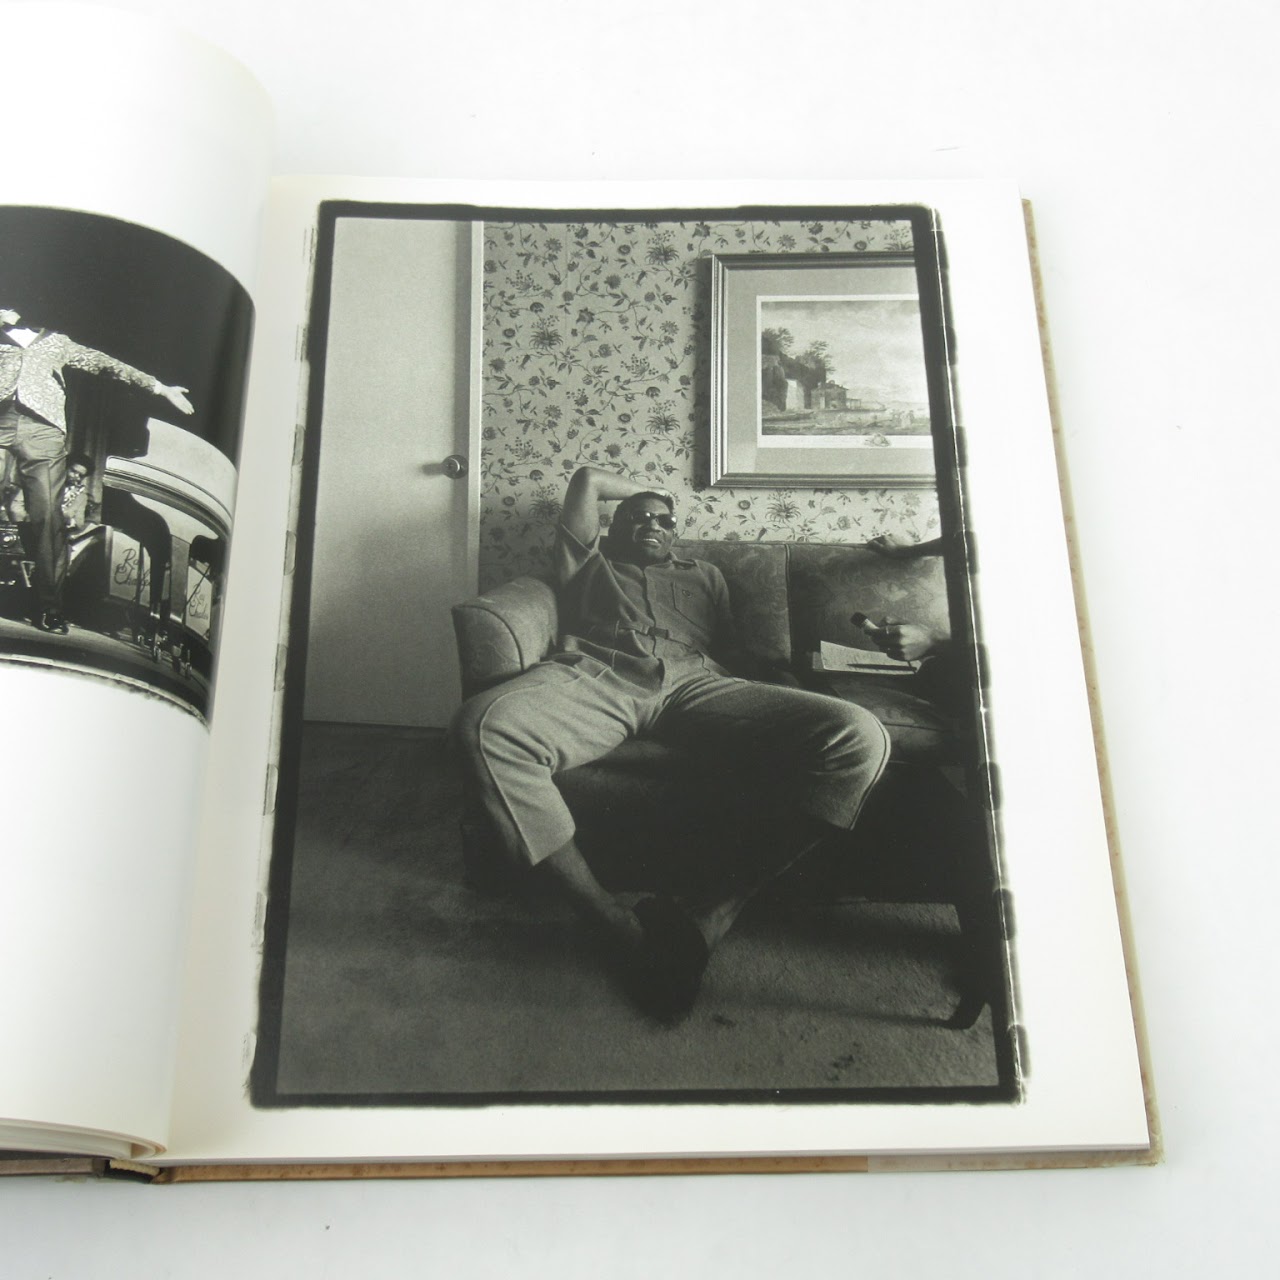 Photographs: Annie Leibovitz 1970-1990 First Edition 